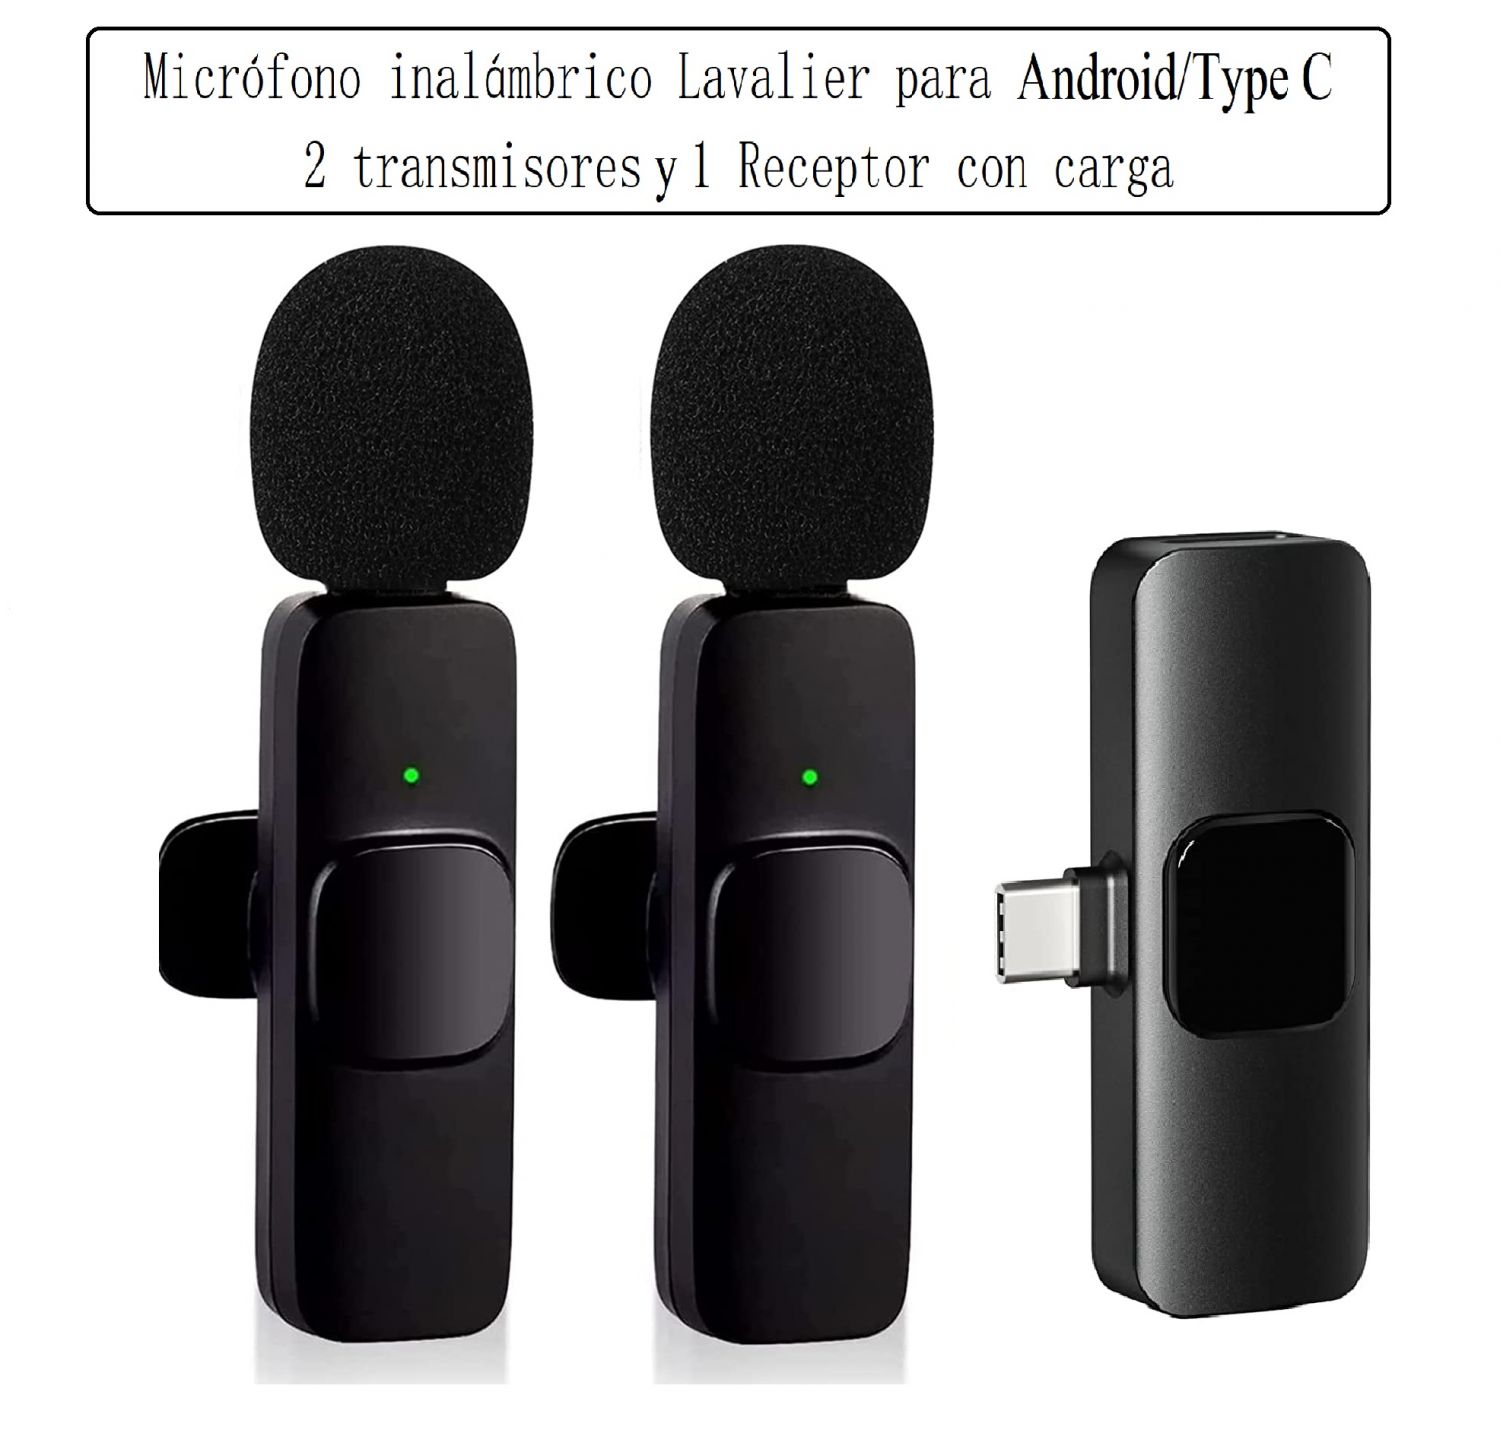 Micrófono inalámbrico Lavalier para Android/Type C 2 transmisores y 1 Receptor con carga ,AAM065